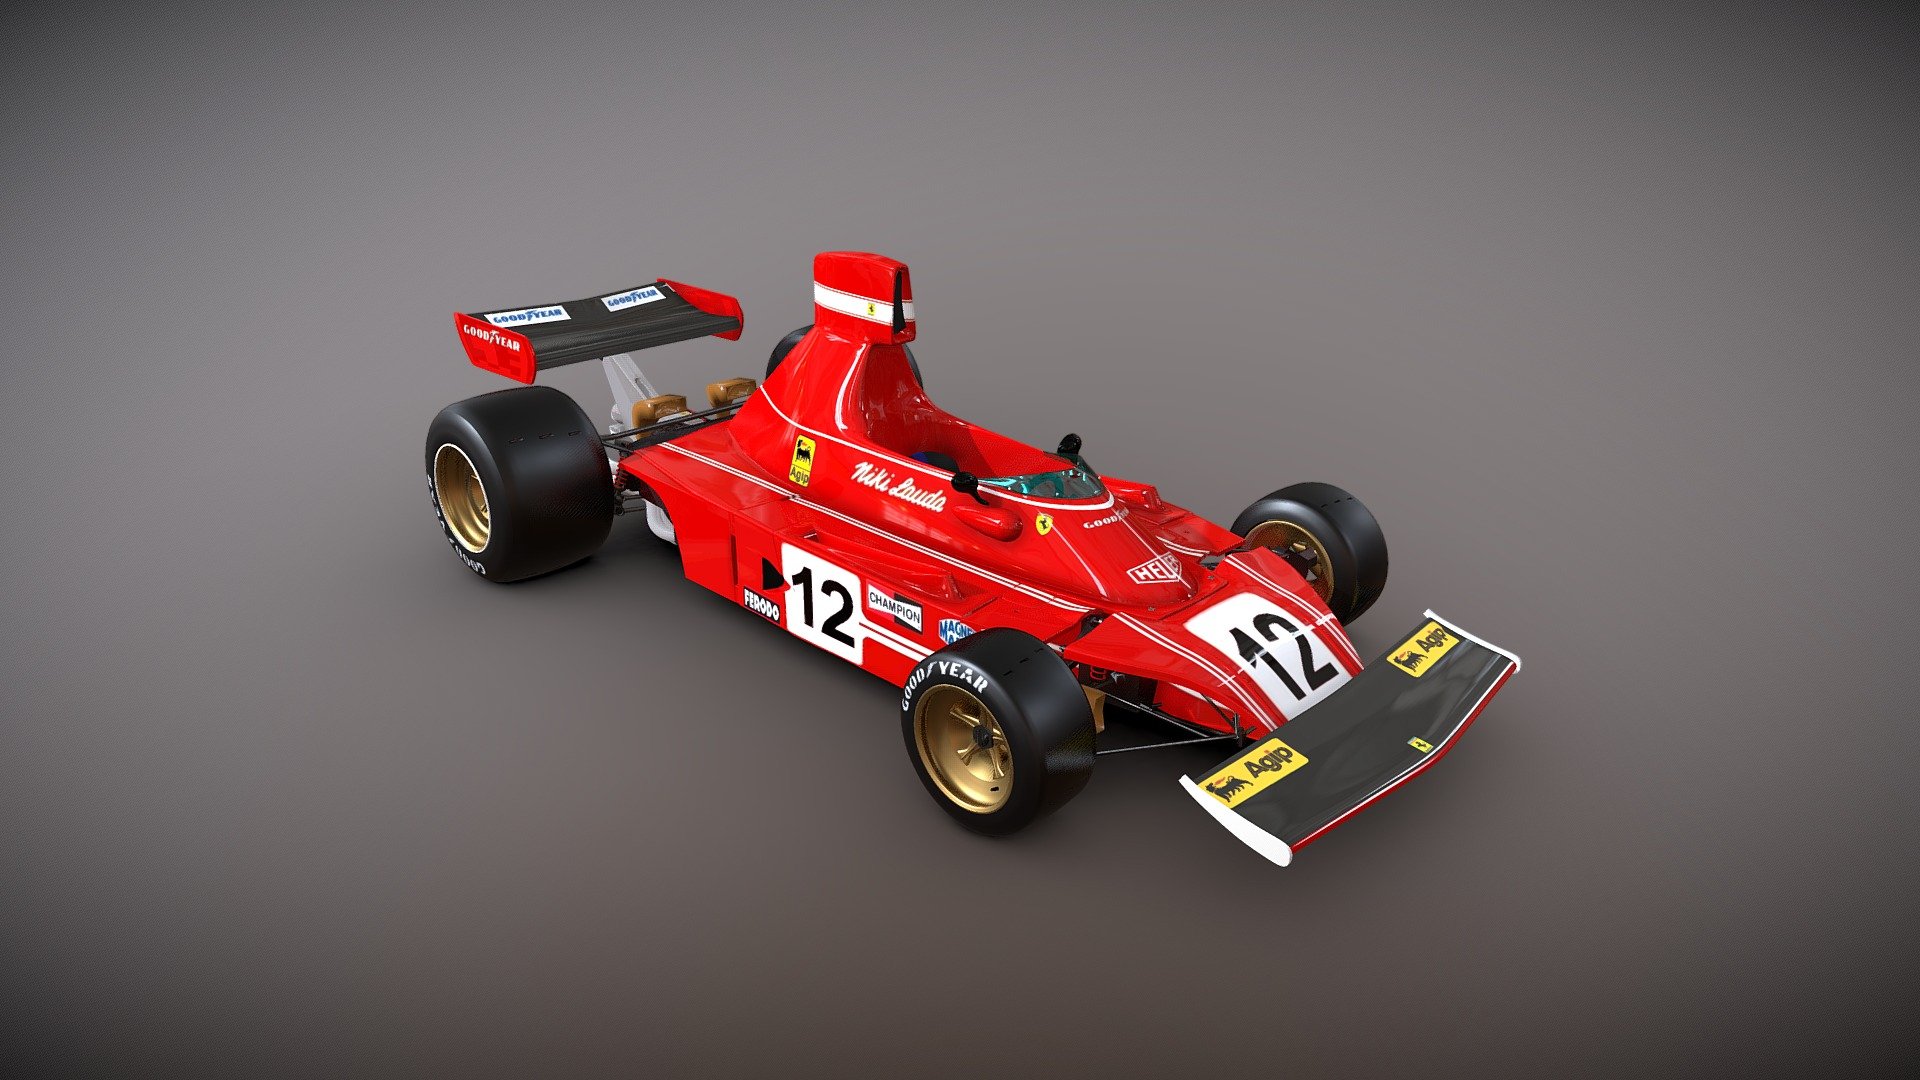 Ferrari 312 B3 Niki Lauda Championship 1974 Formula 1 - Ferrari 312 B3 Niki Lauda - Buy Royalty Free 3D model by JavierVRT 3d model